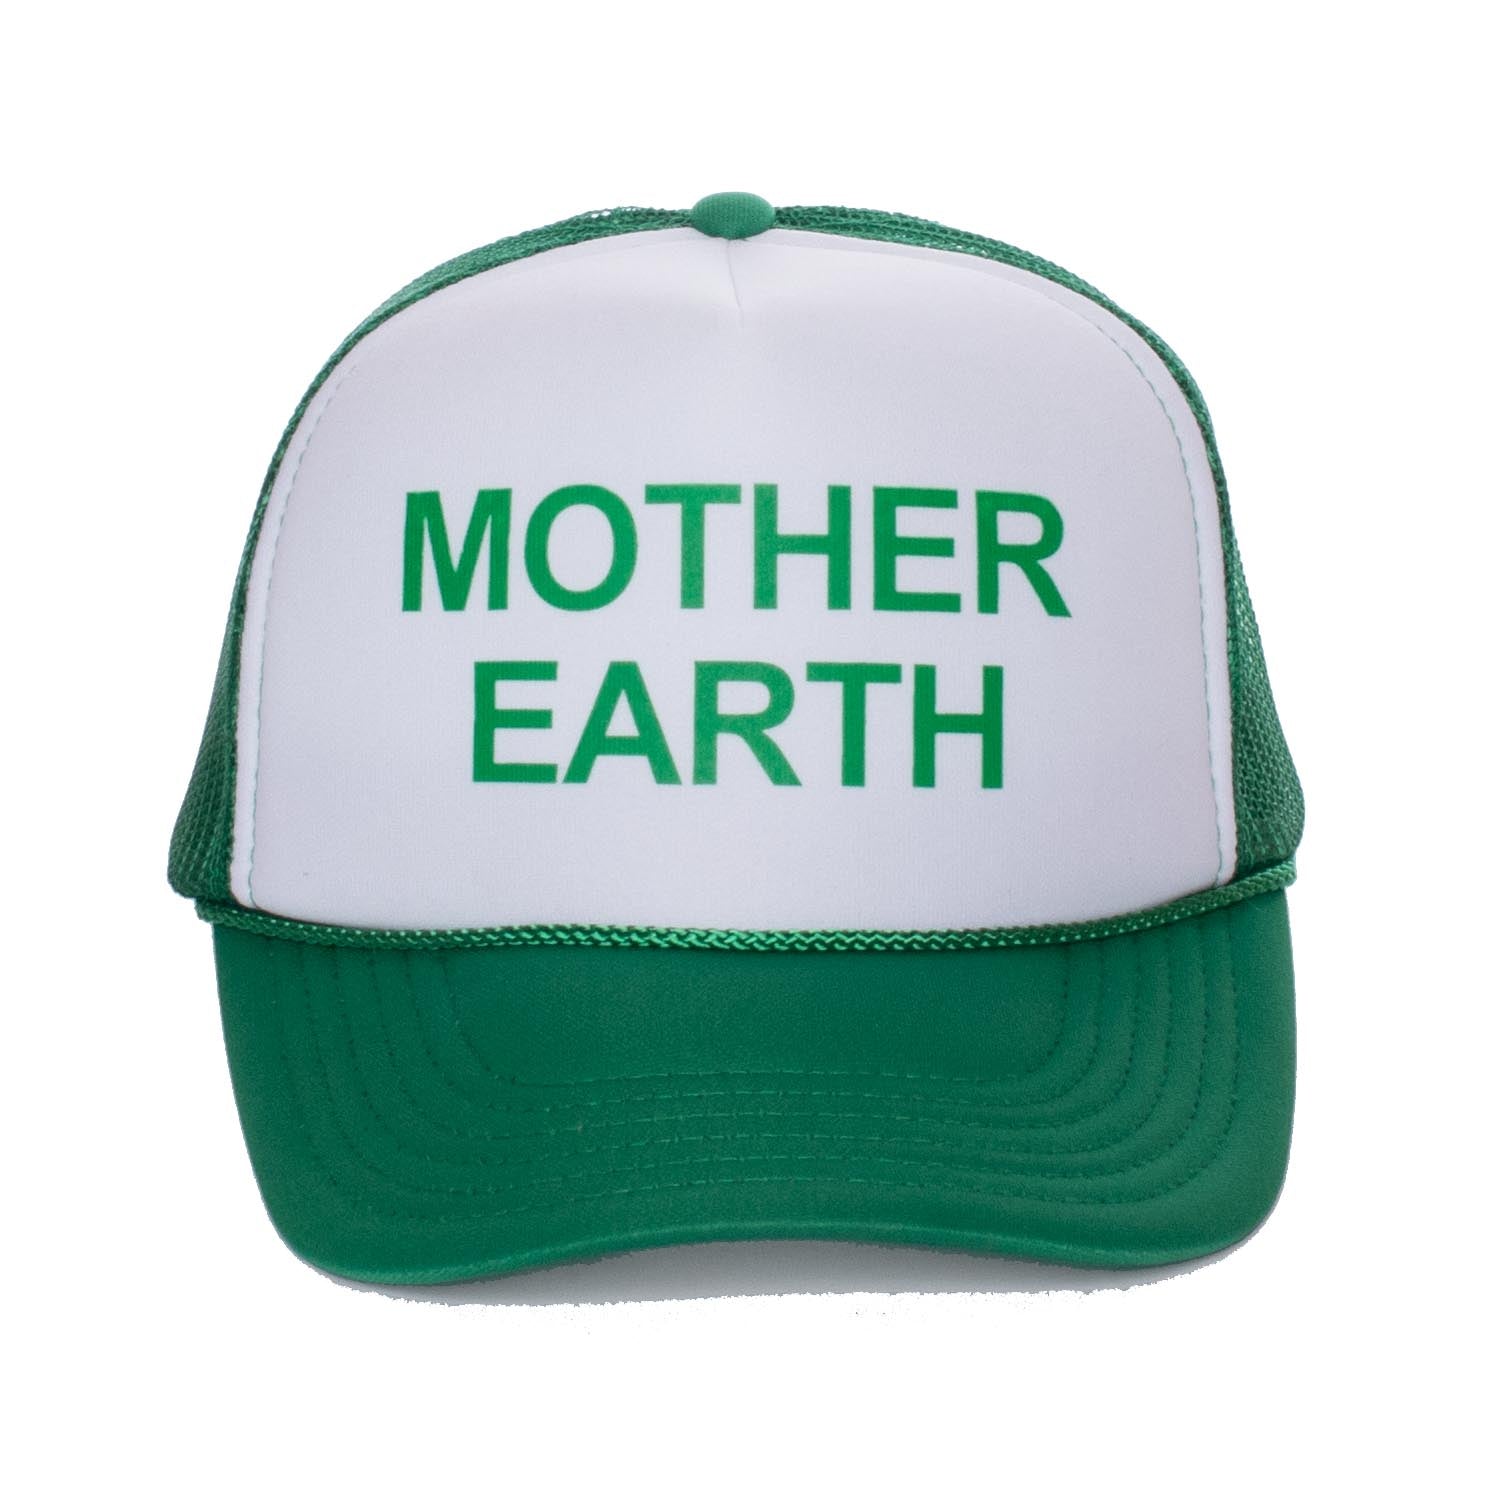 MOTHER EARTH Trucker Cap